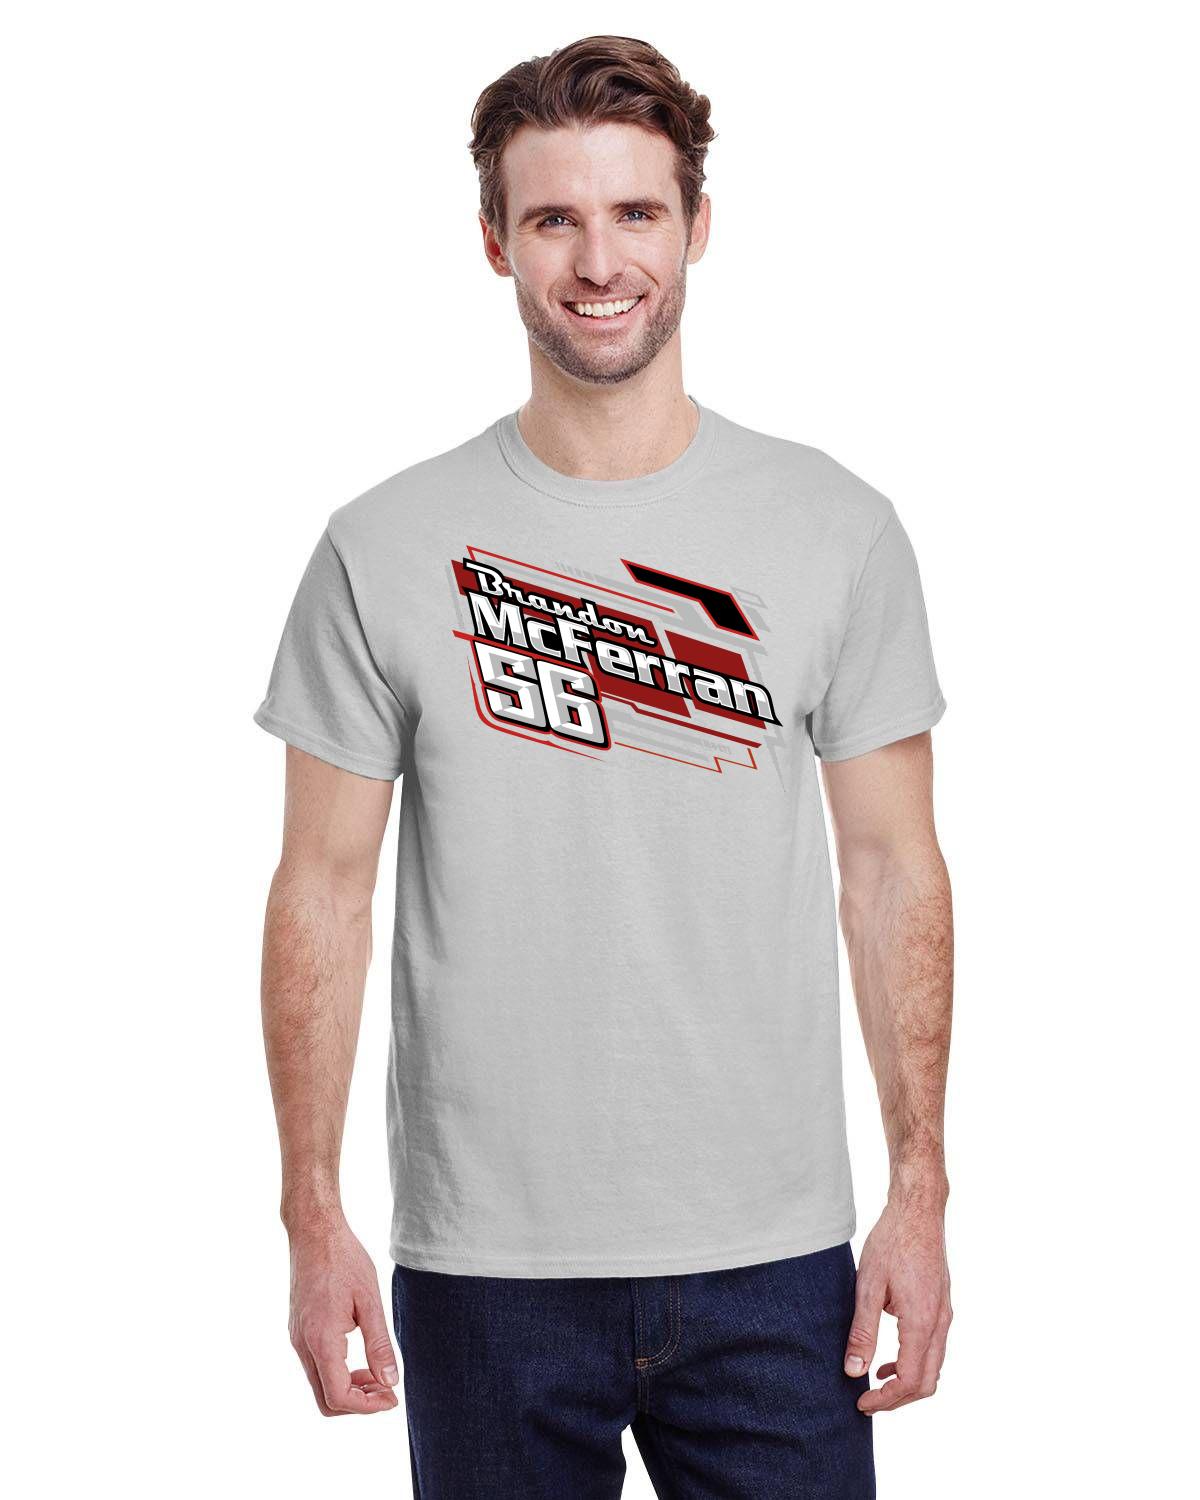 Brandon McFerran Racing Men's tshirt